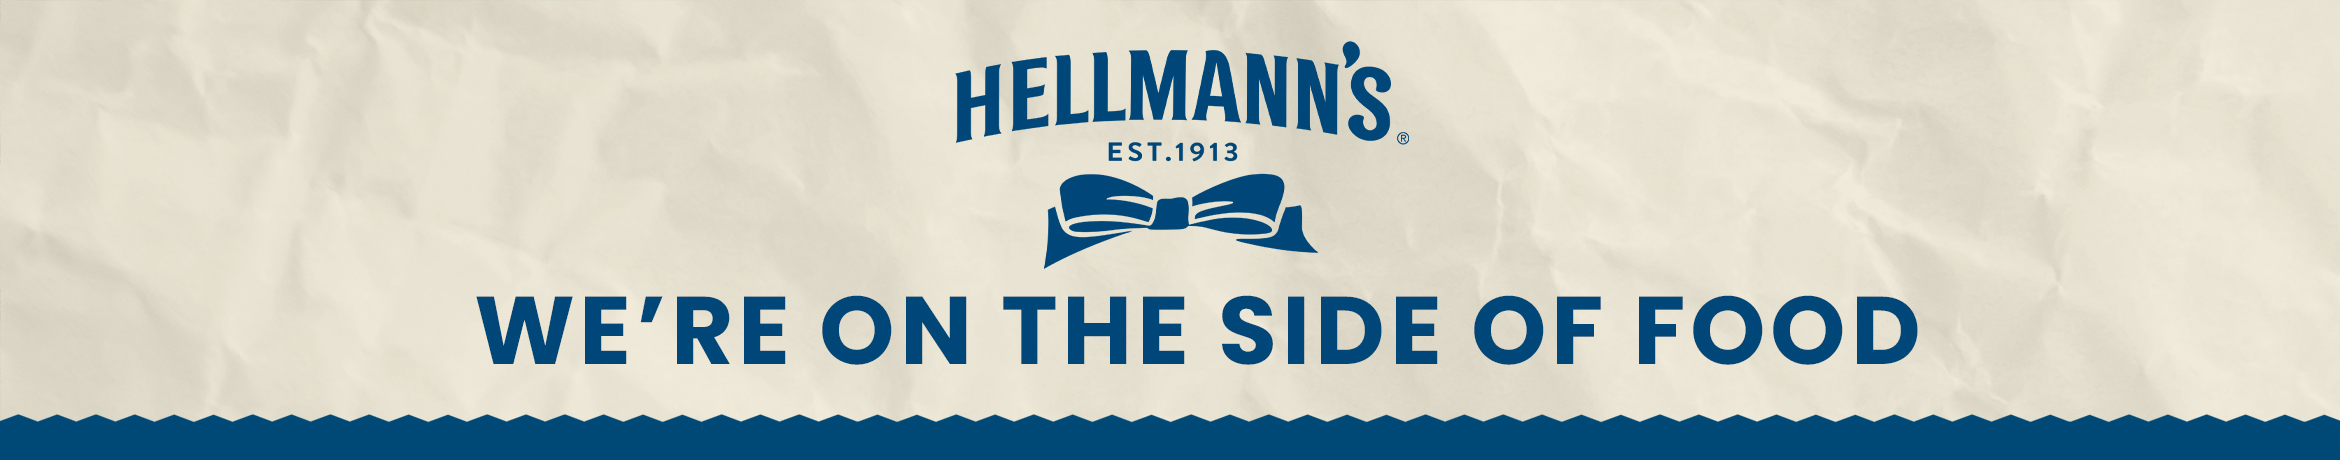 Hellmann's merkenpagina